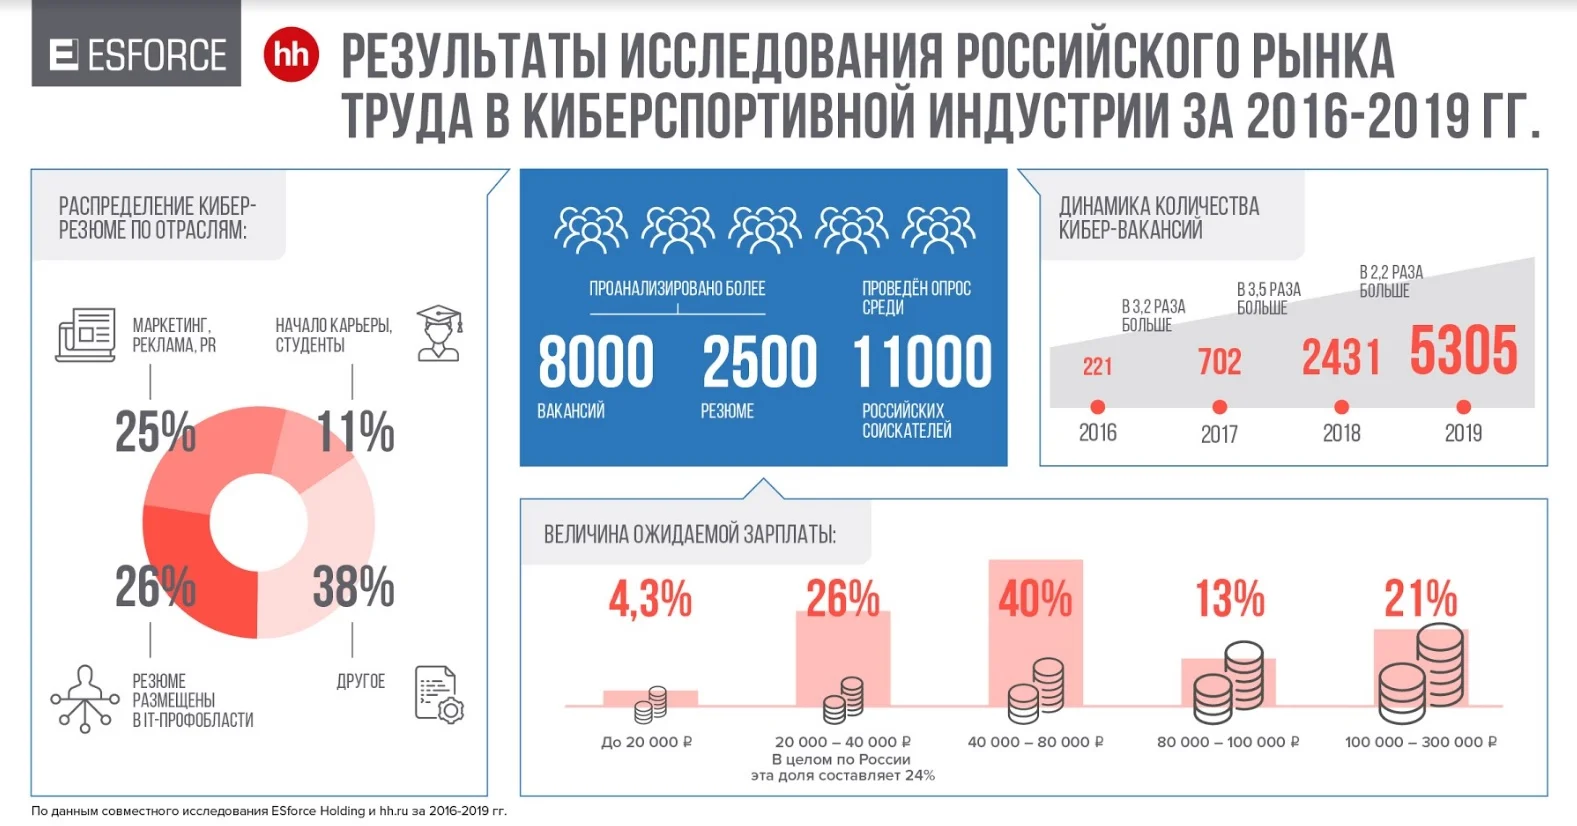 Исследование: приходящие в российский киберспорт люди хотят получать от 40 до 80 тысяч рублей - фото 2